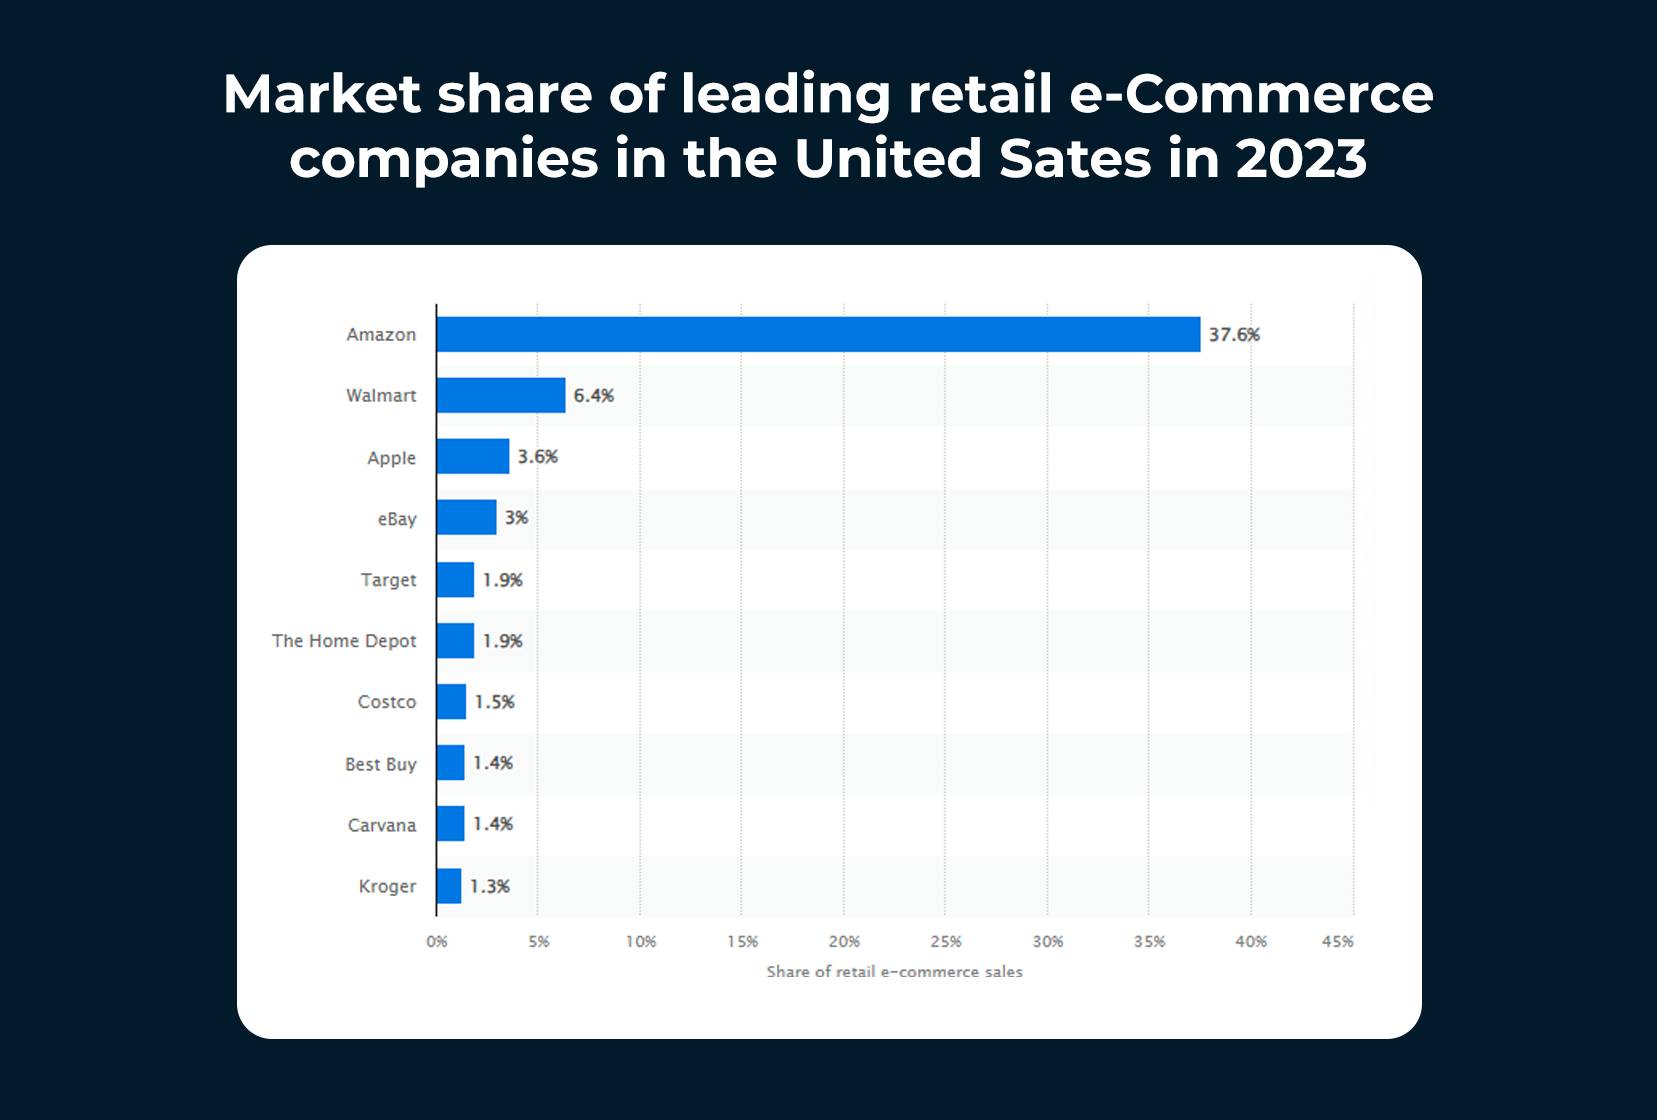 سهم بازار کسب و کارهای پیشرو در تجارت الکترونیک خرده فروشی در ایالات متحده آمریکا